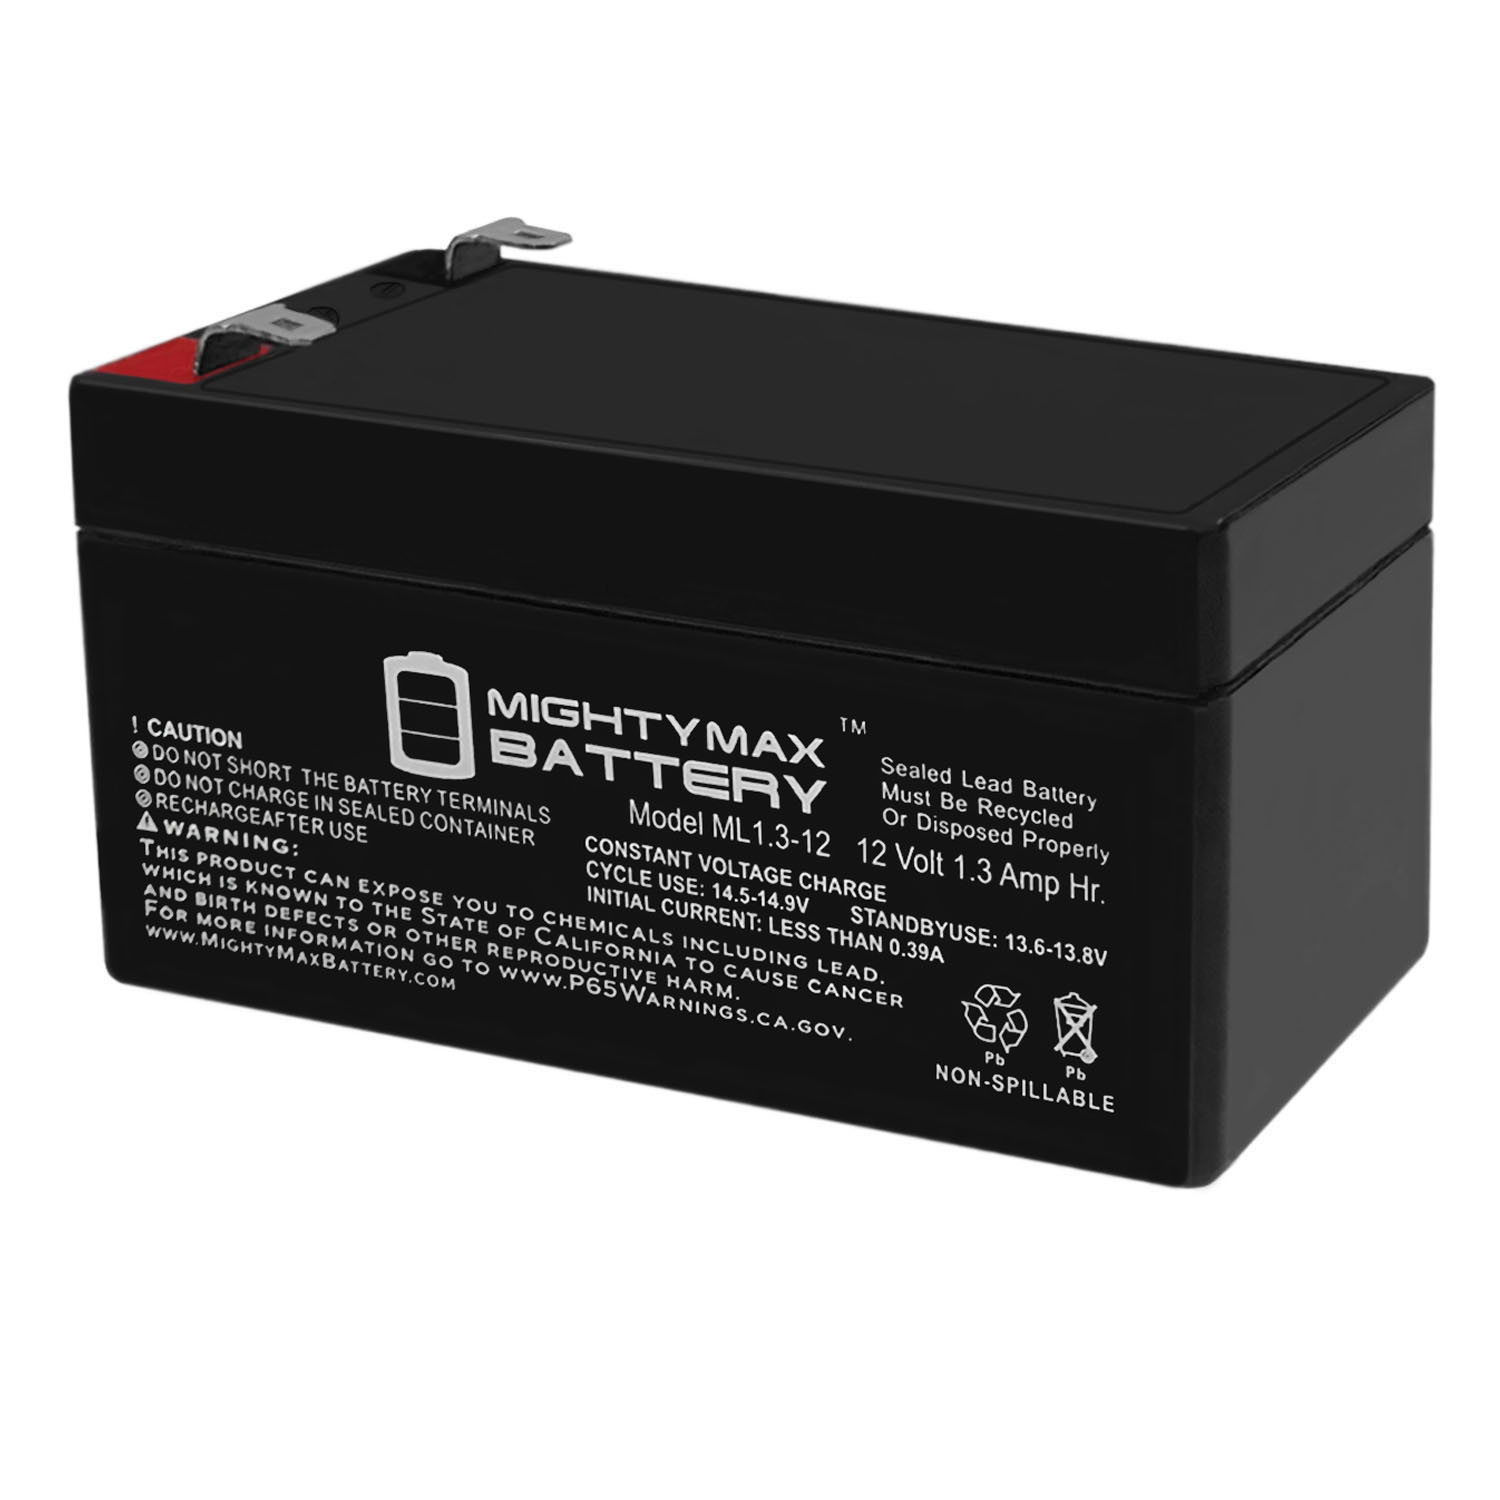 Ritar rt1213. ARMSTAR Max 12v. Mightiness Battery Pack 4.8v. 12v 1.3 ah